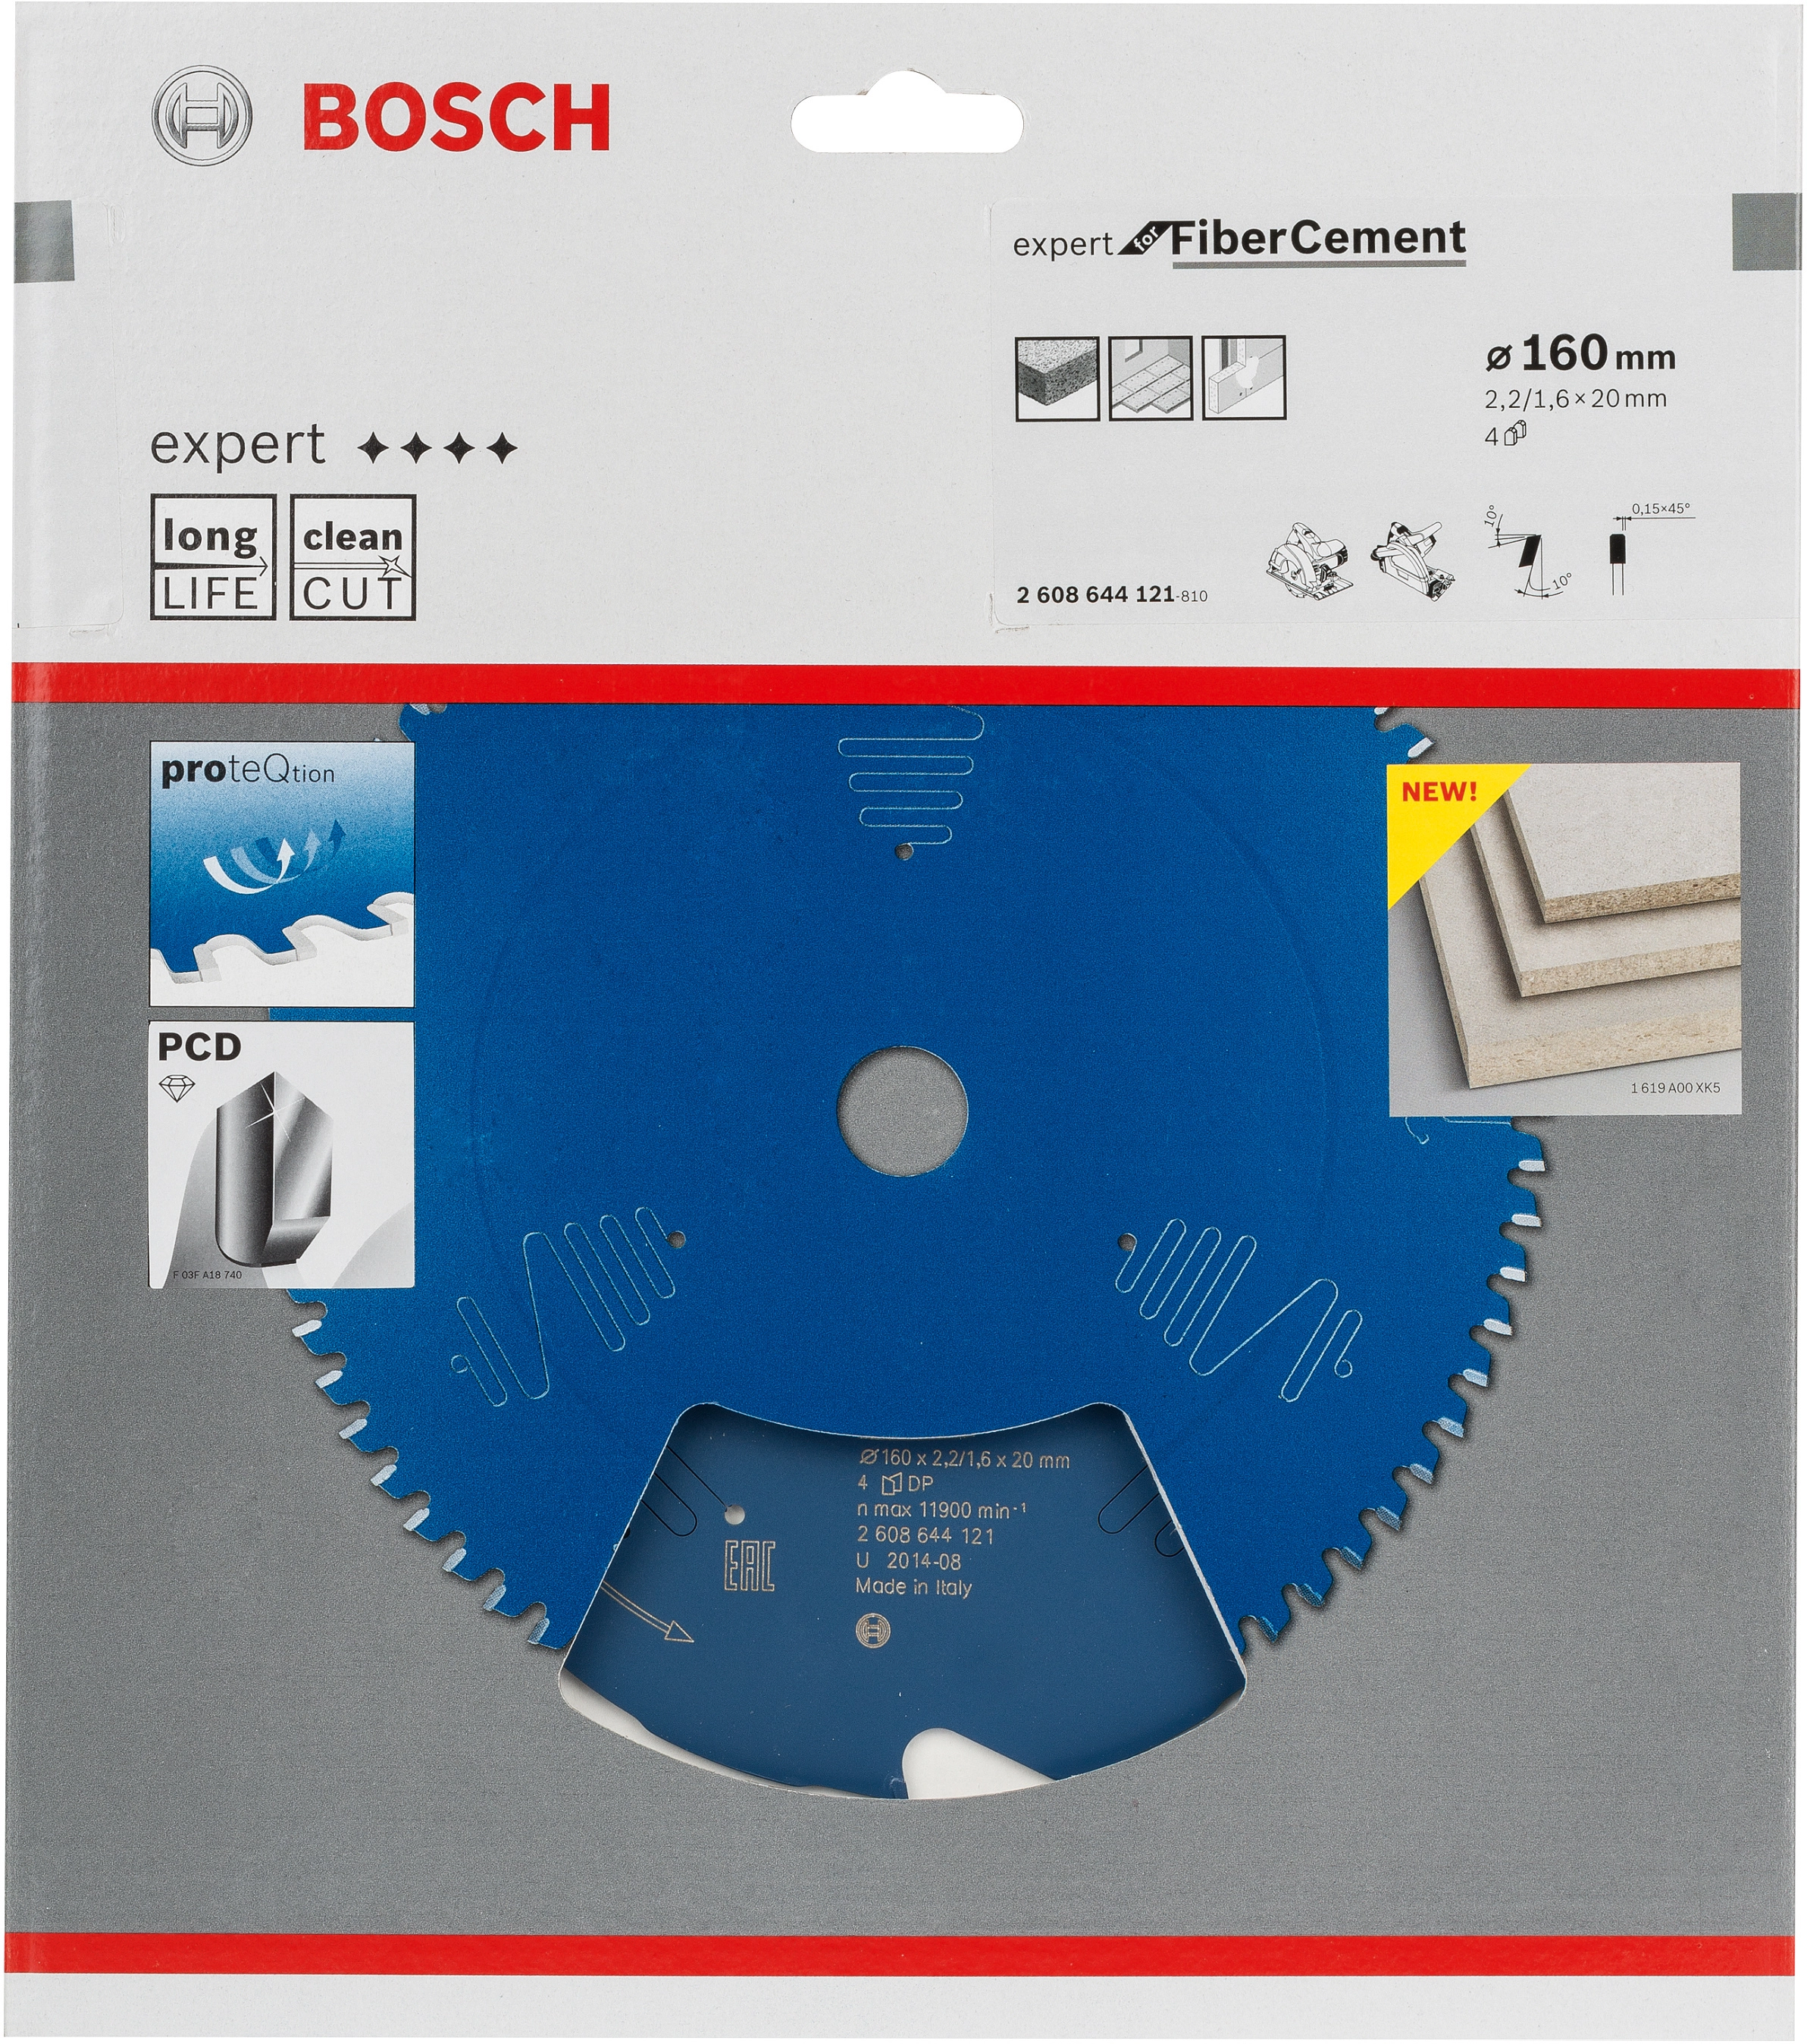 Bosch HW Kreissägeblatt Expert for Fibre Cement 160 mm x 20 mm x 2,2 mm  kaufen bei OBI